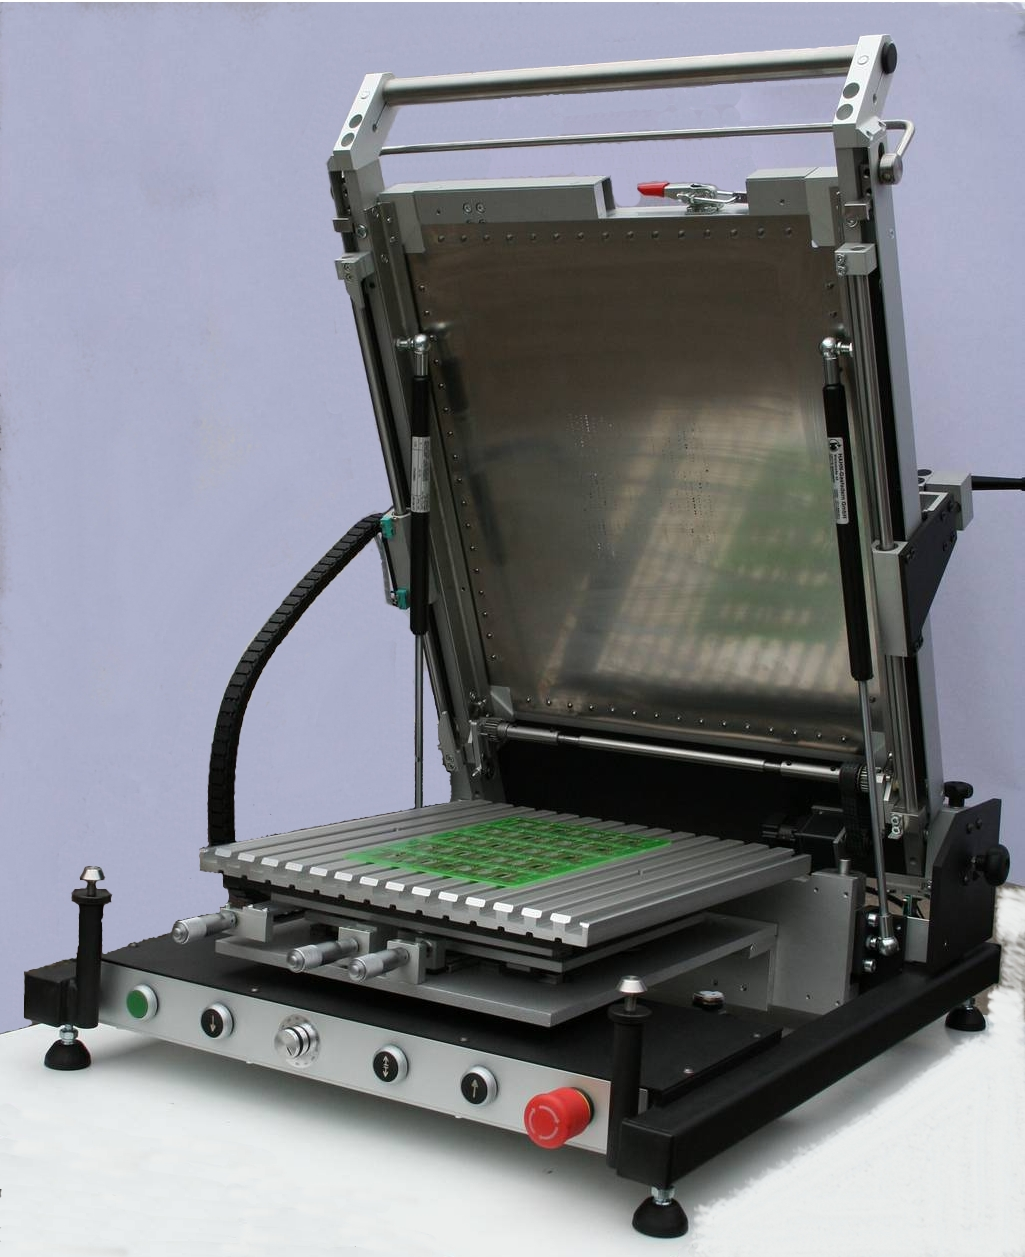 Принтер для любых поверхностей. Ручной трафаретный принтер Mechatronic Systems s20. Ручной трафаретный принтер SR-2000. Полуавтоматический трафаретный принтер STP-550. Трафаретный принтер SMD.